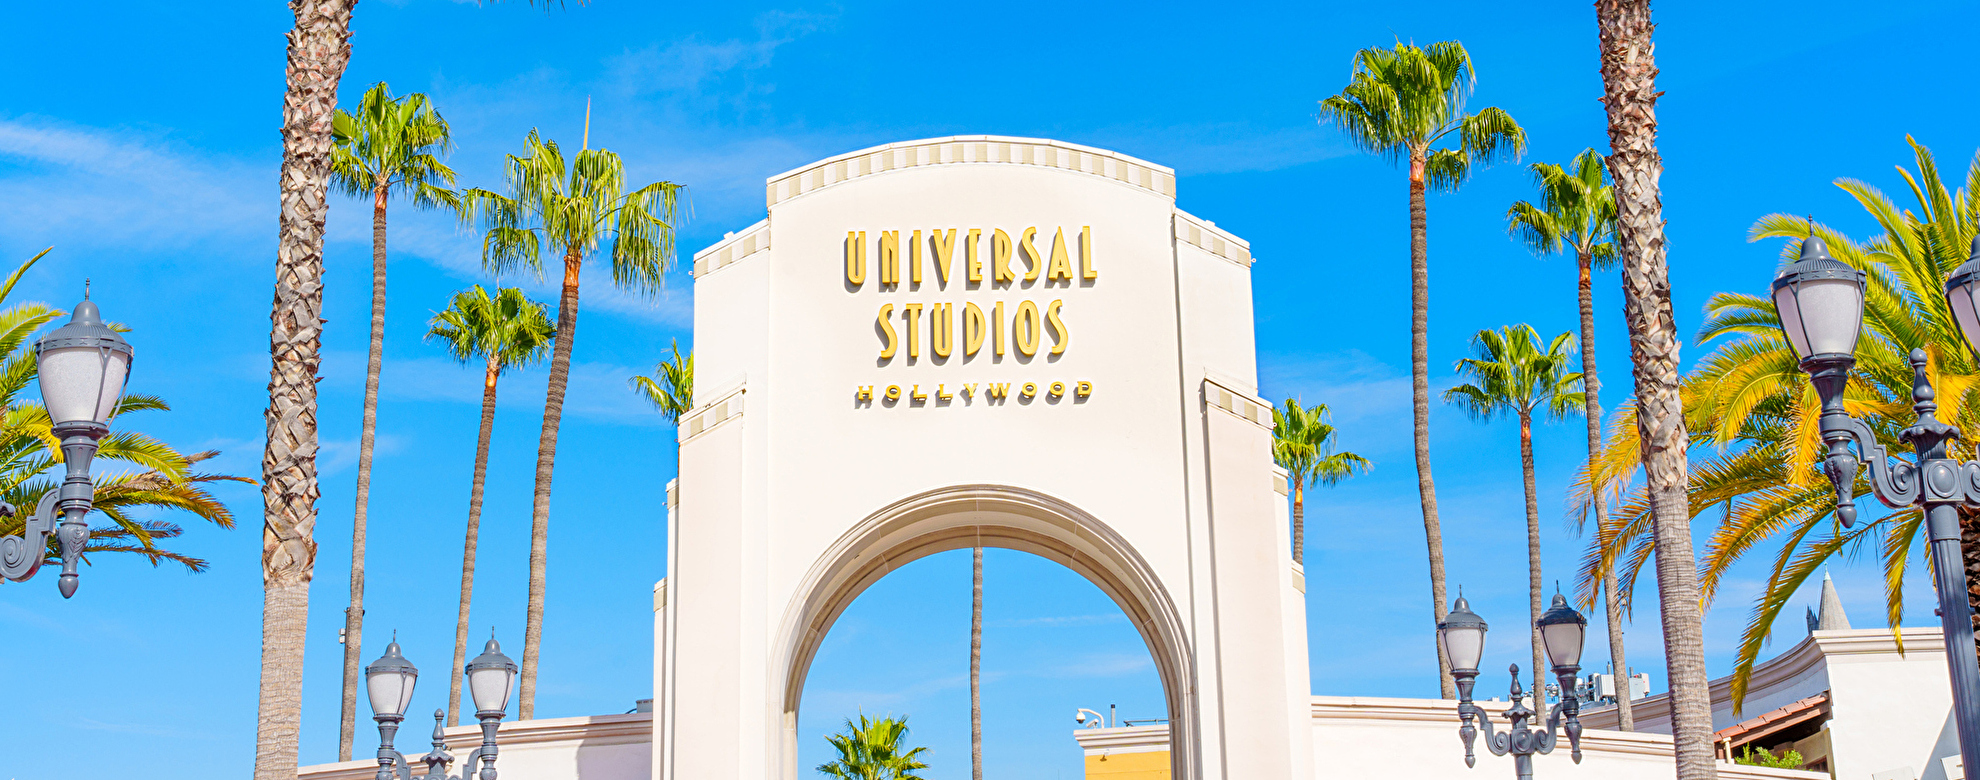 ユニバーサル・スタジオ・ハリウッド(カリフォルニア)の見どころからチケット購入方法までご紹介